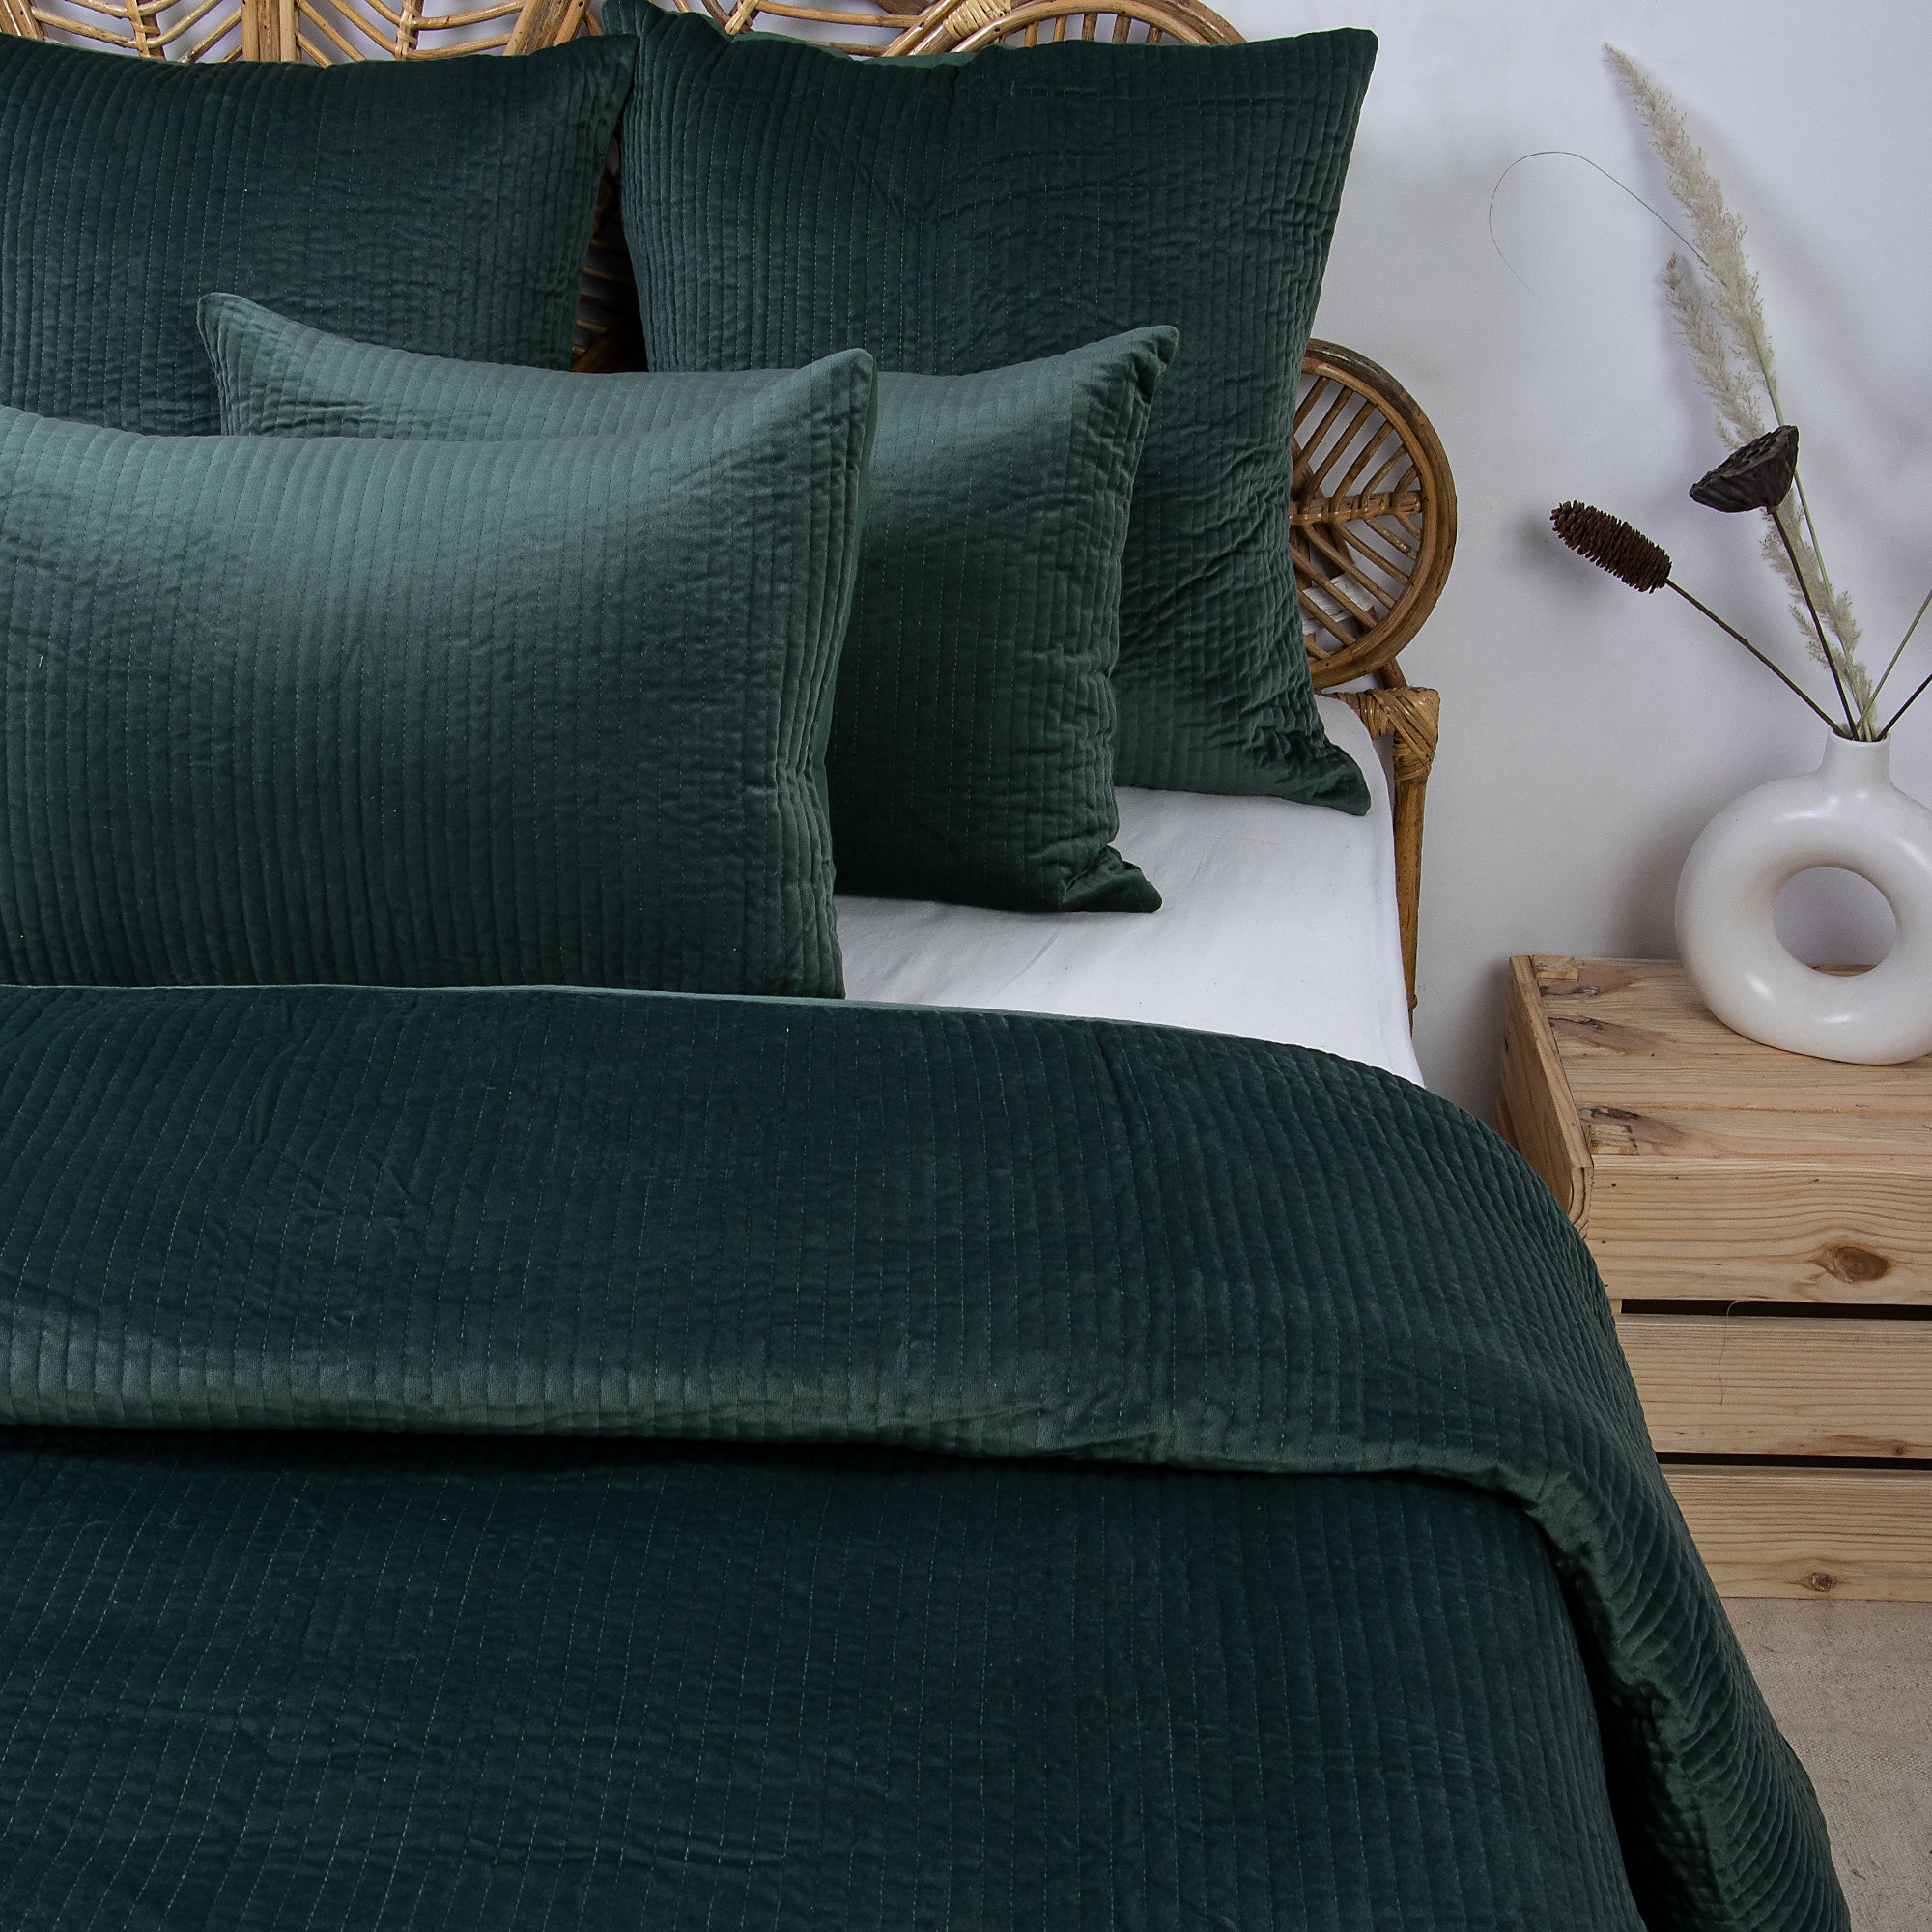 Handmade Luxury Green Soft Velvet Blanket Online